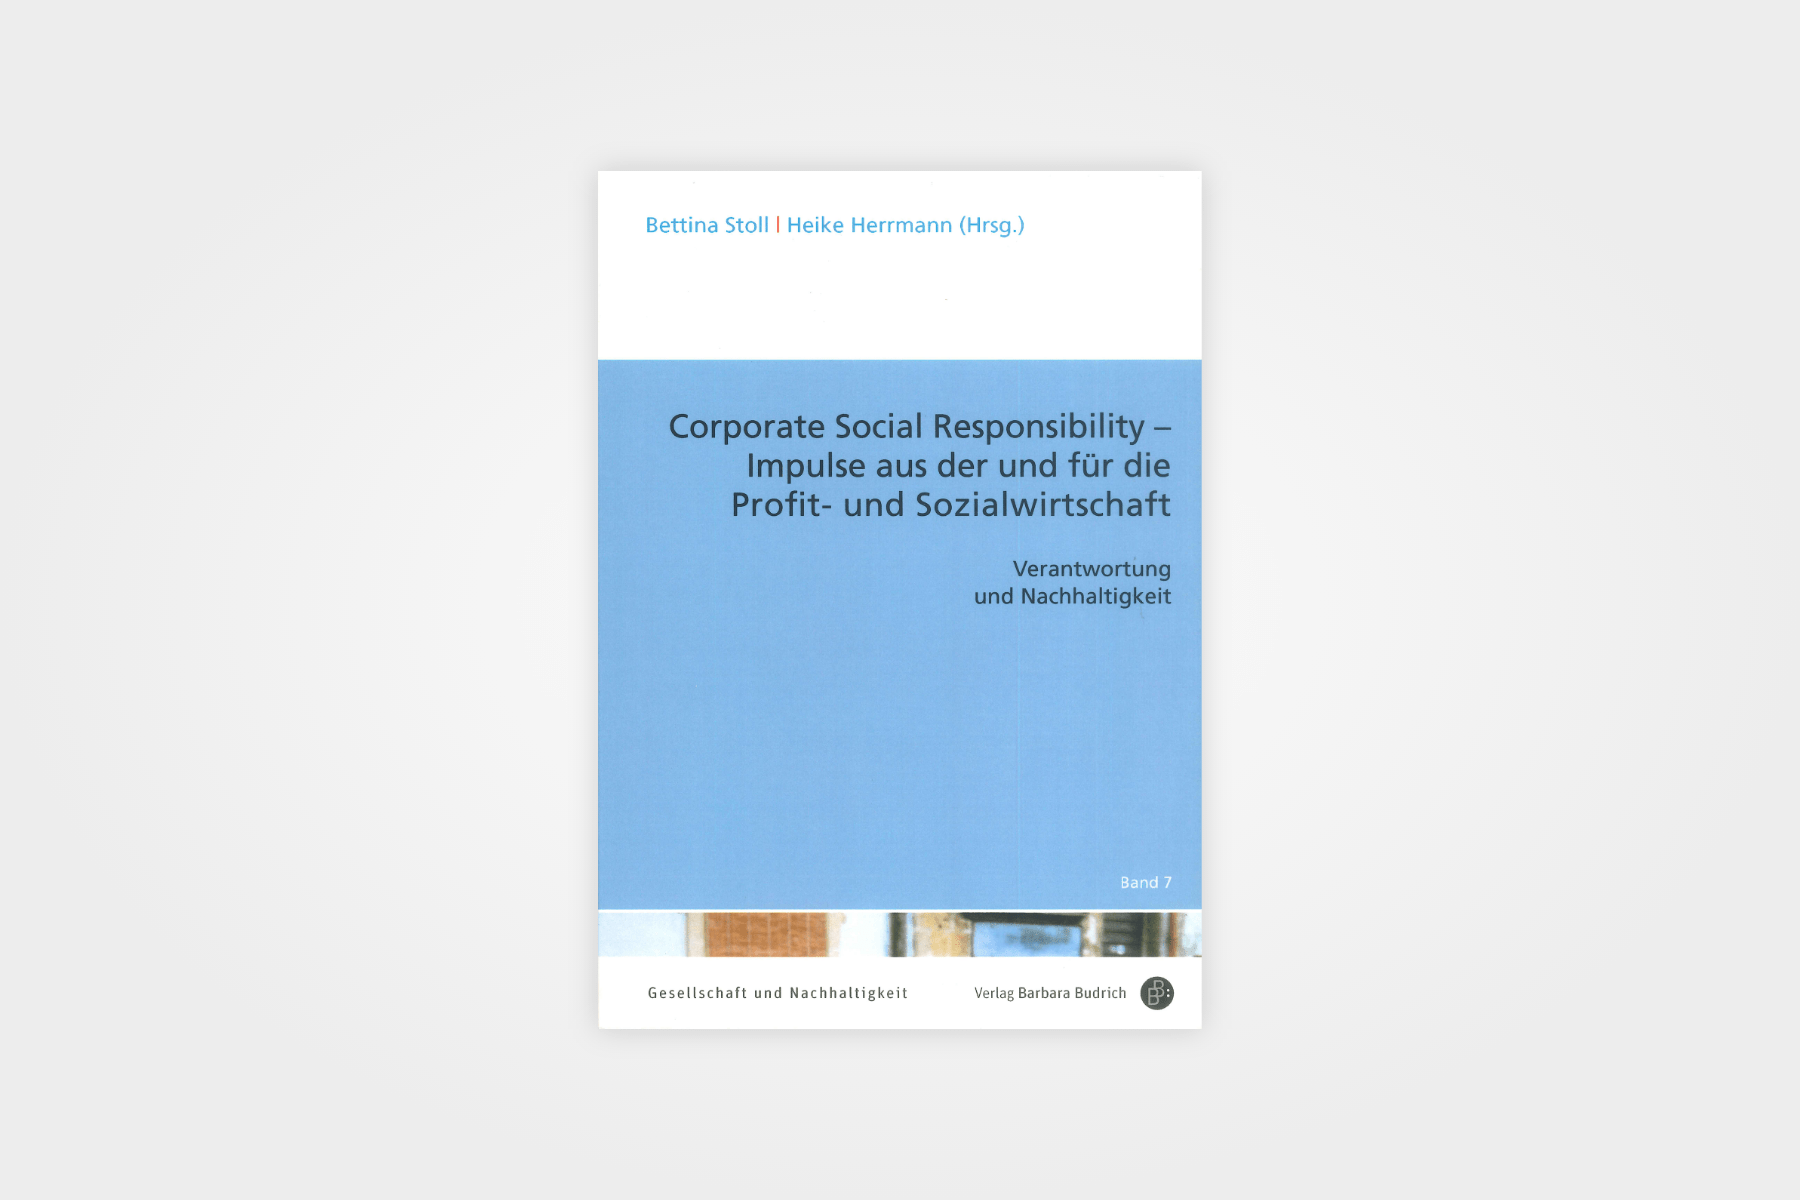 Corporate Social Responsibility als Instrument der Mitarbeitergewinnung